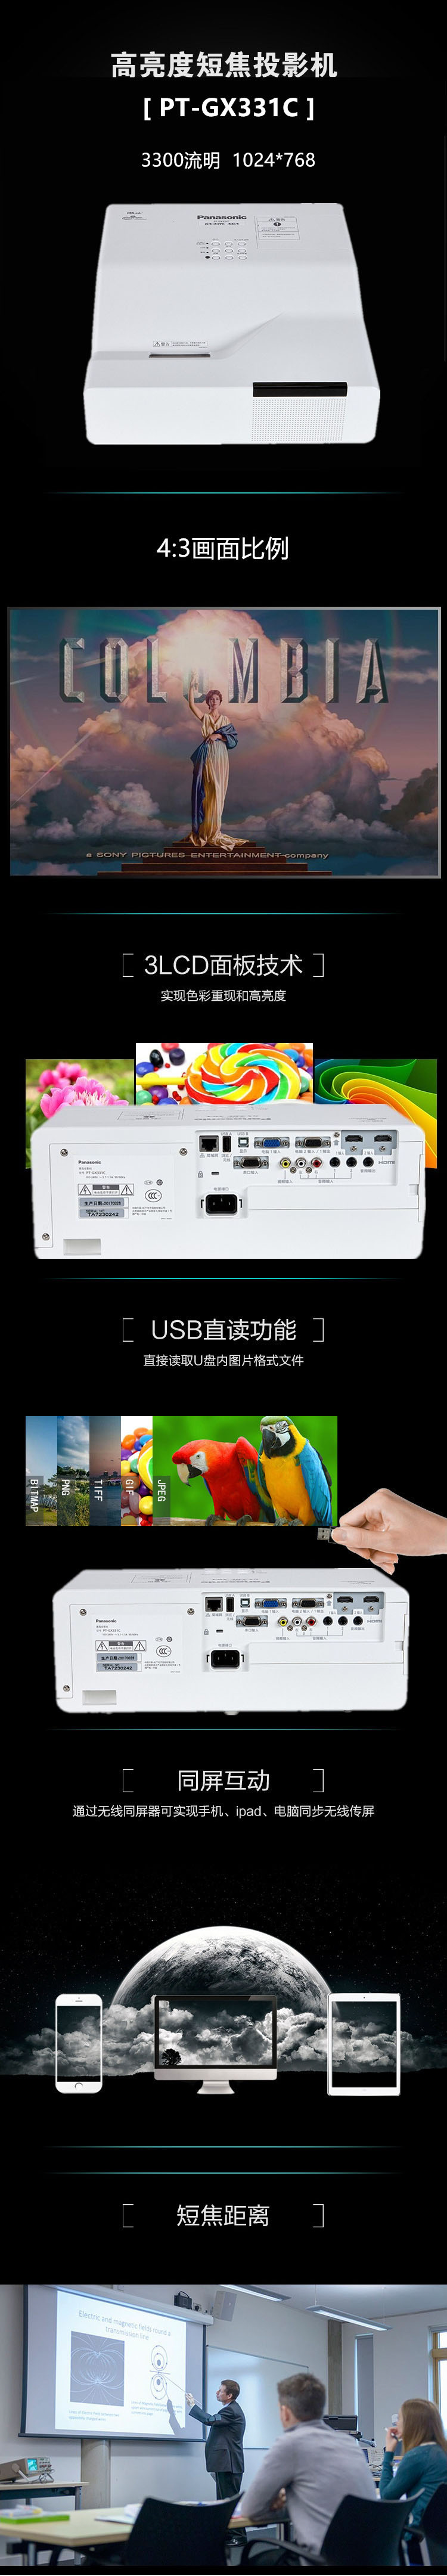 松下（Panasonic）PT-GX331C 投影机 超短焦 办公 培训投影仪 官方标配【价格、品牌.jpg